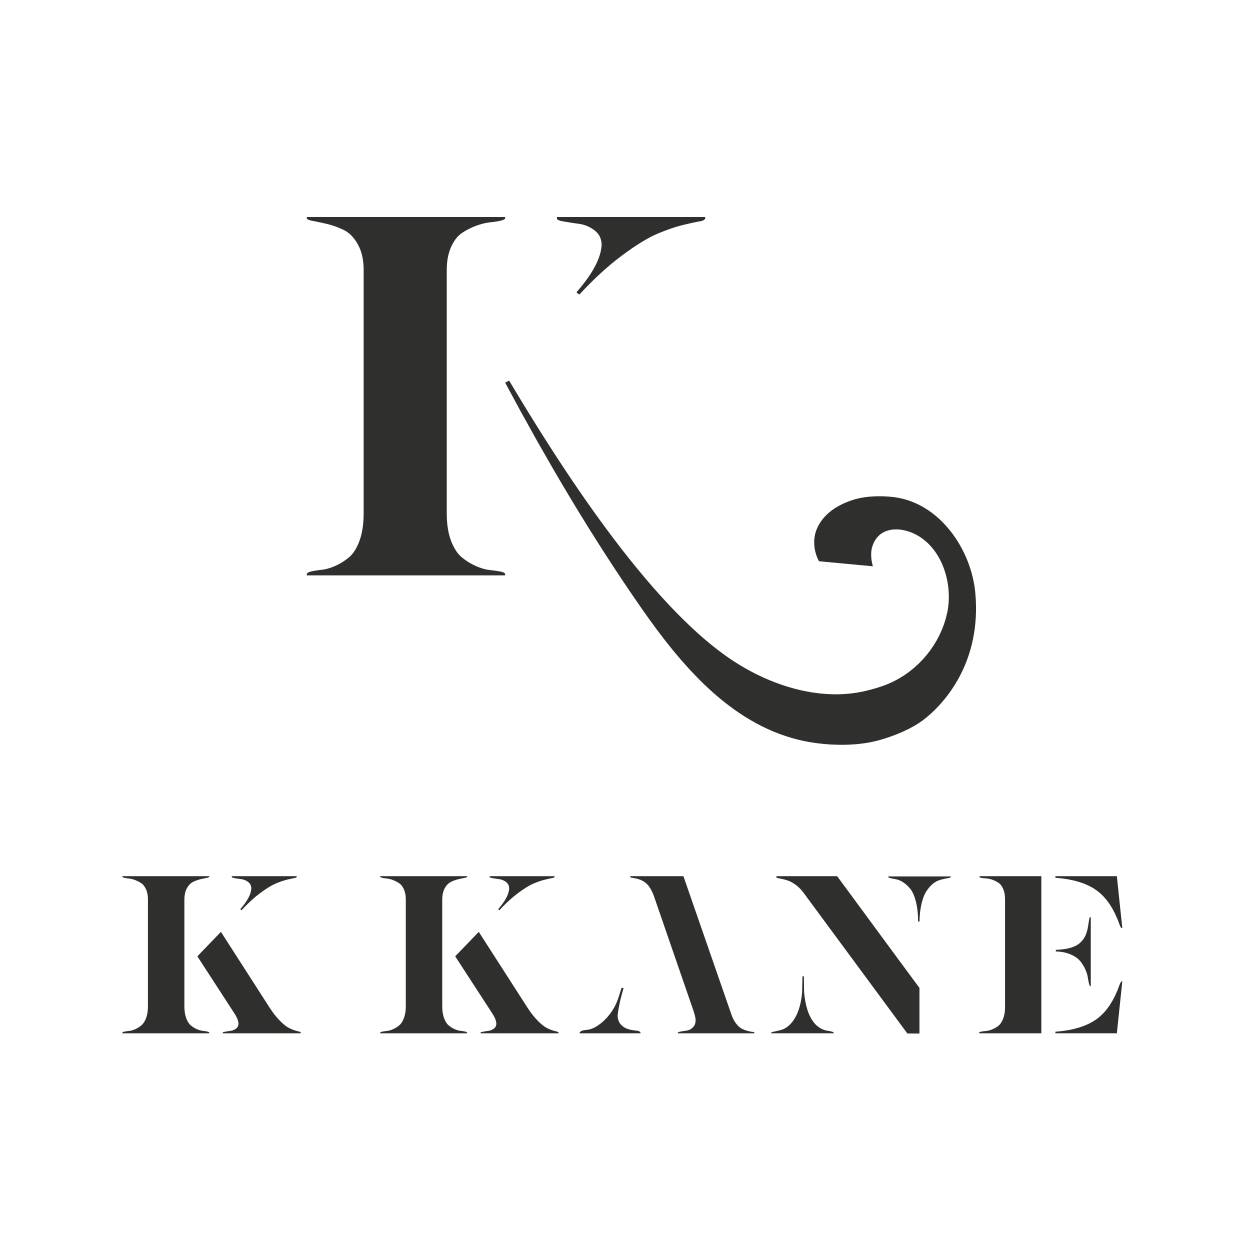 Coupon codes K Kane